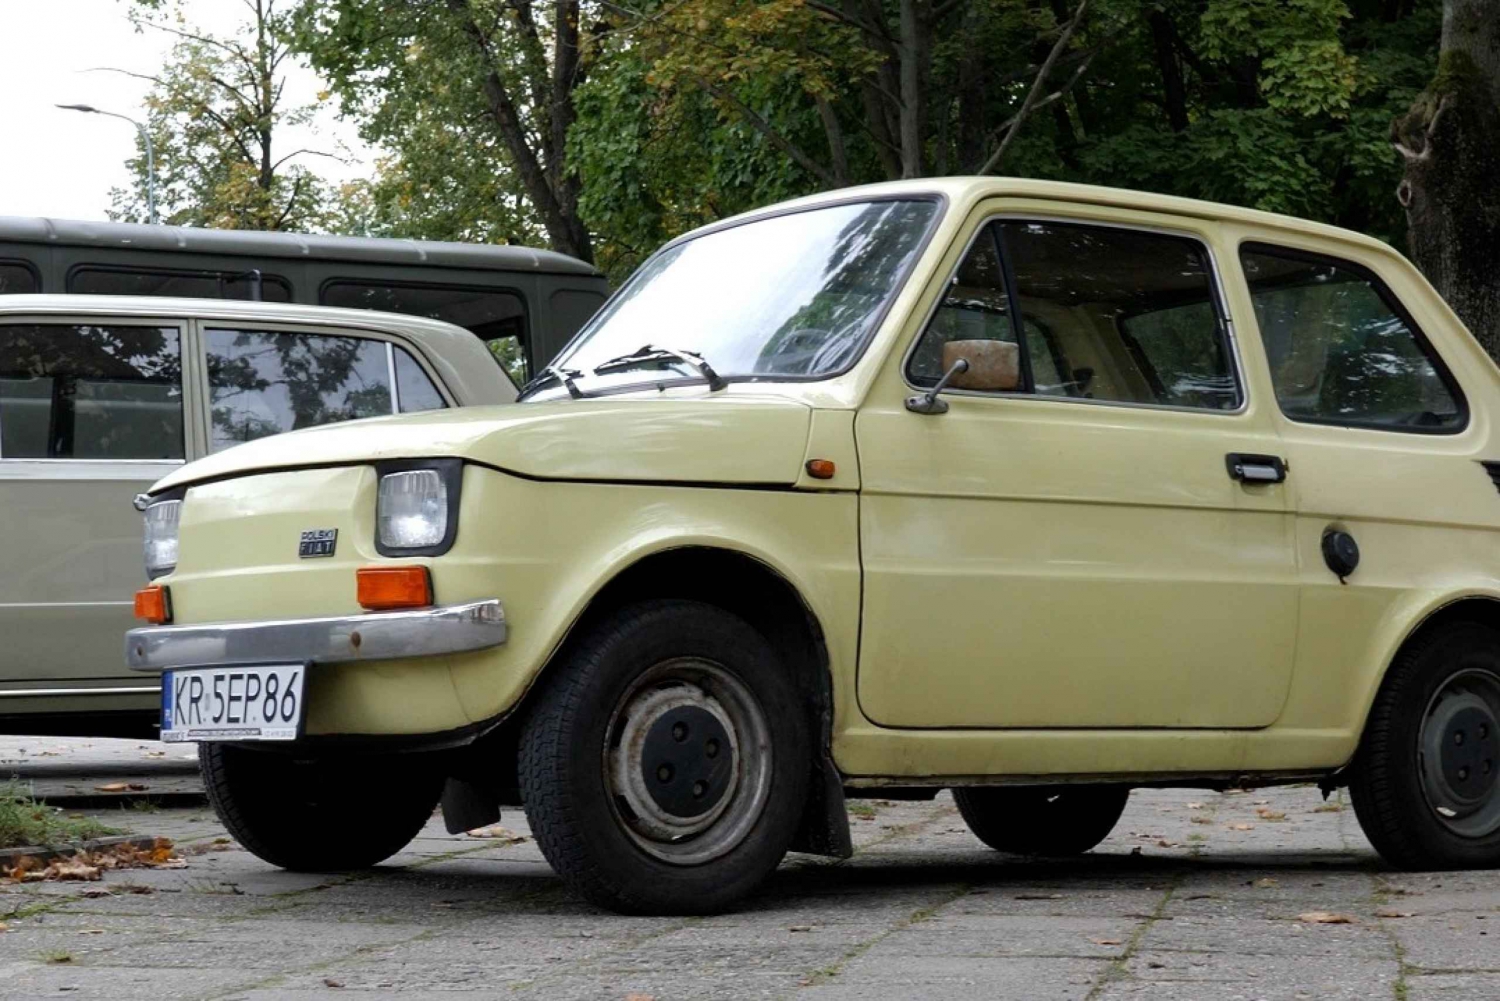 Krakow: Rundvisning i Nowa Huta i en bil fra den kommunistiske tid